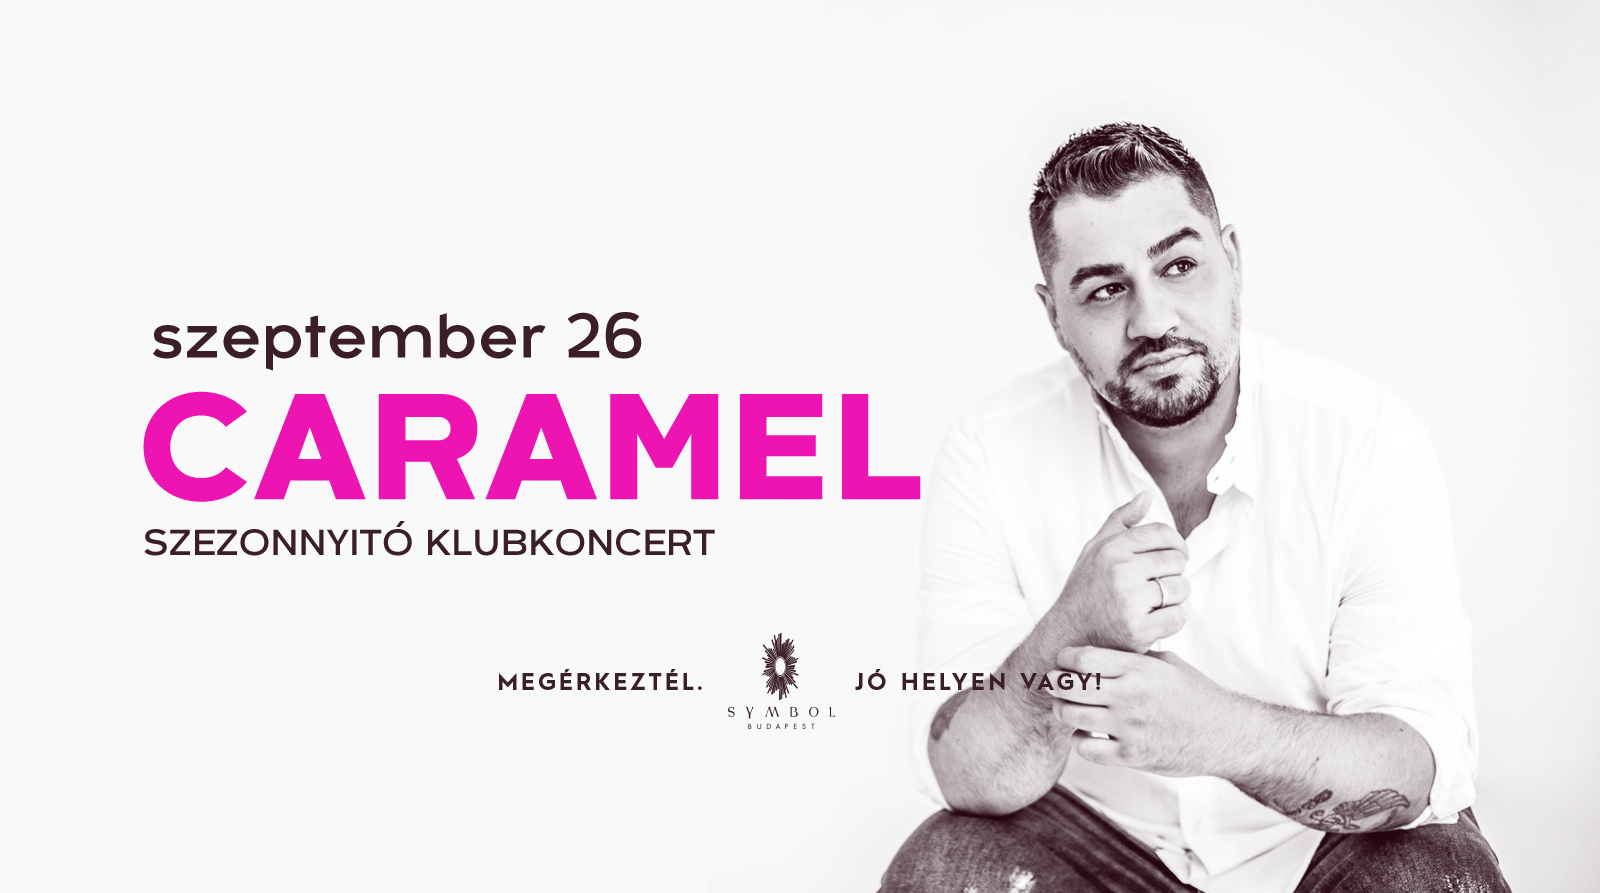 Caramel szezonnyitó klubkoncert - Symbol Budapest